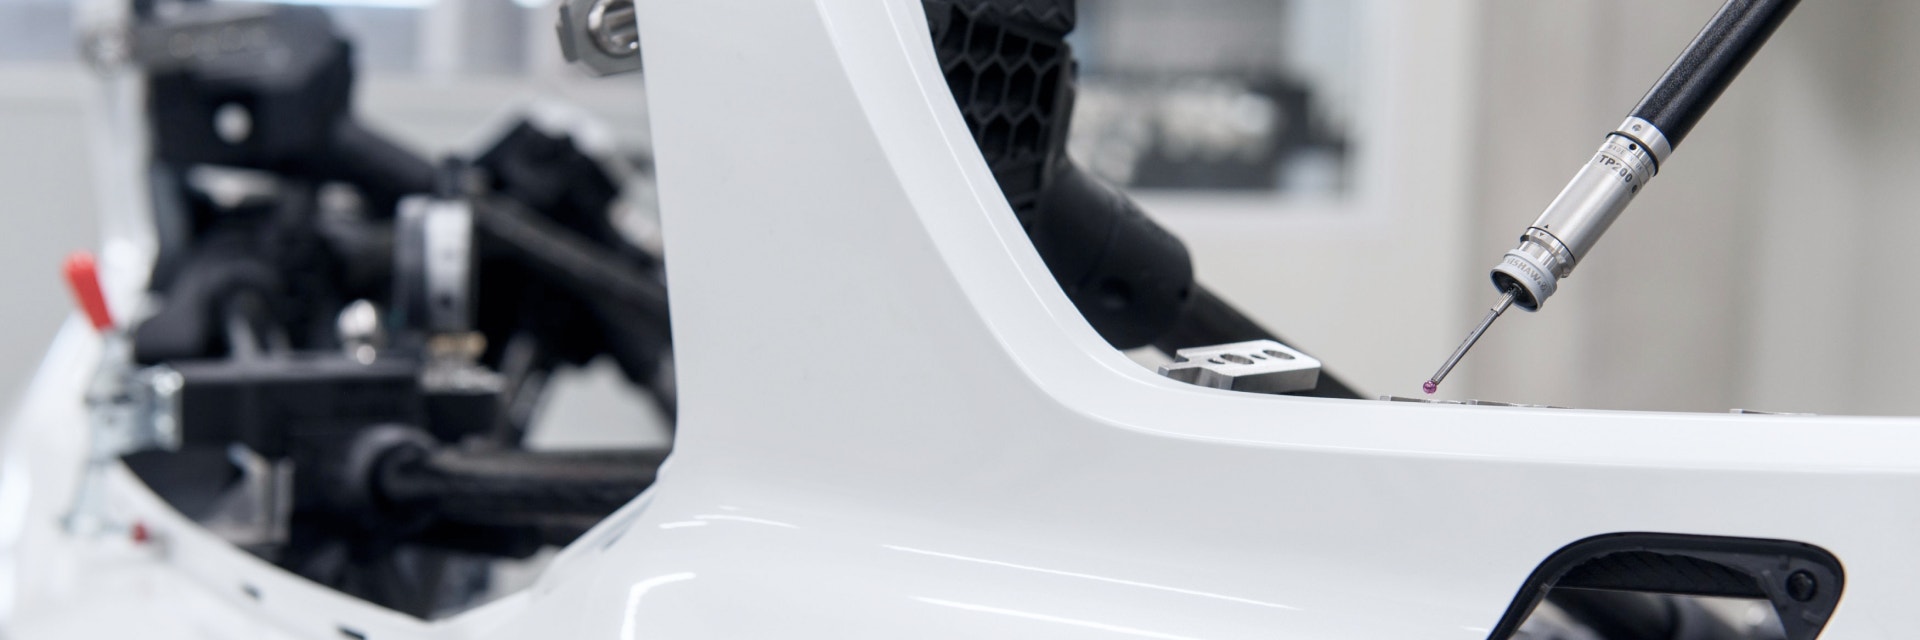 Équipement de contrôle automobile pointu près du châssis blanc d'une voiture en production